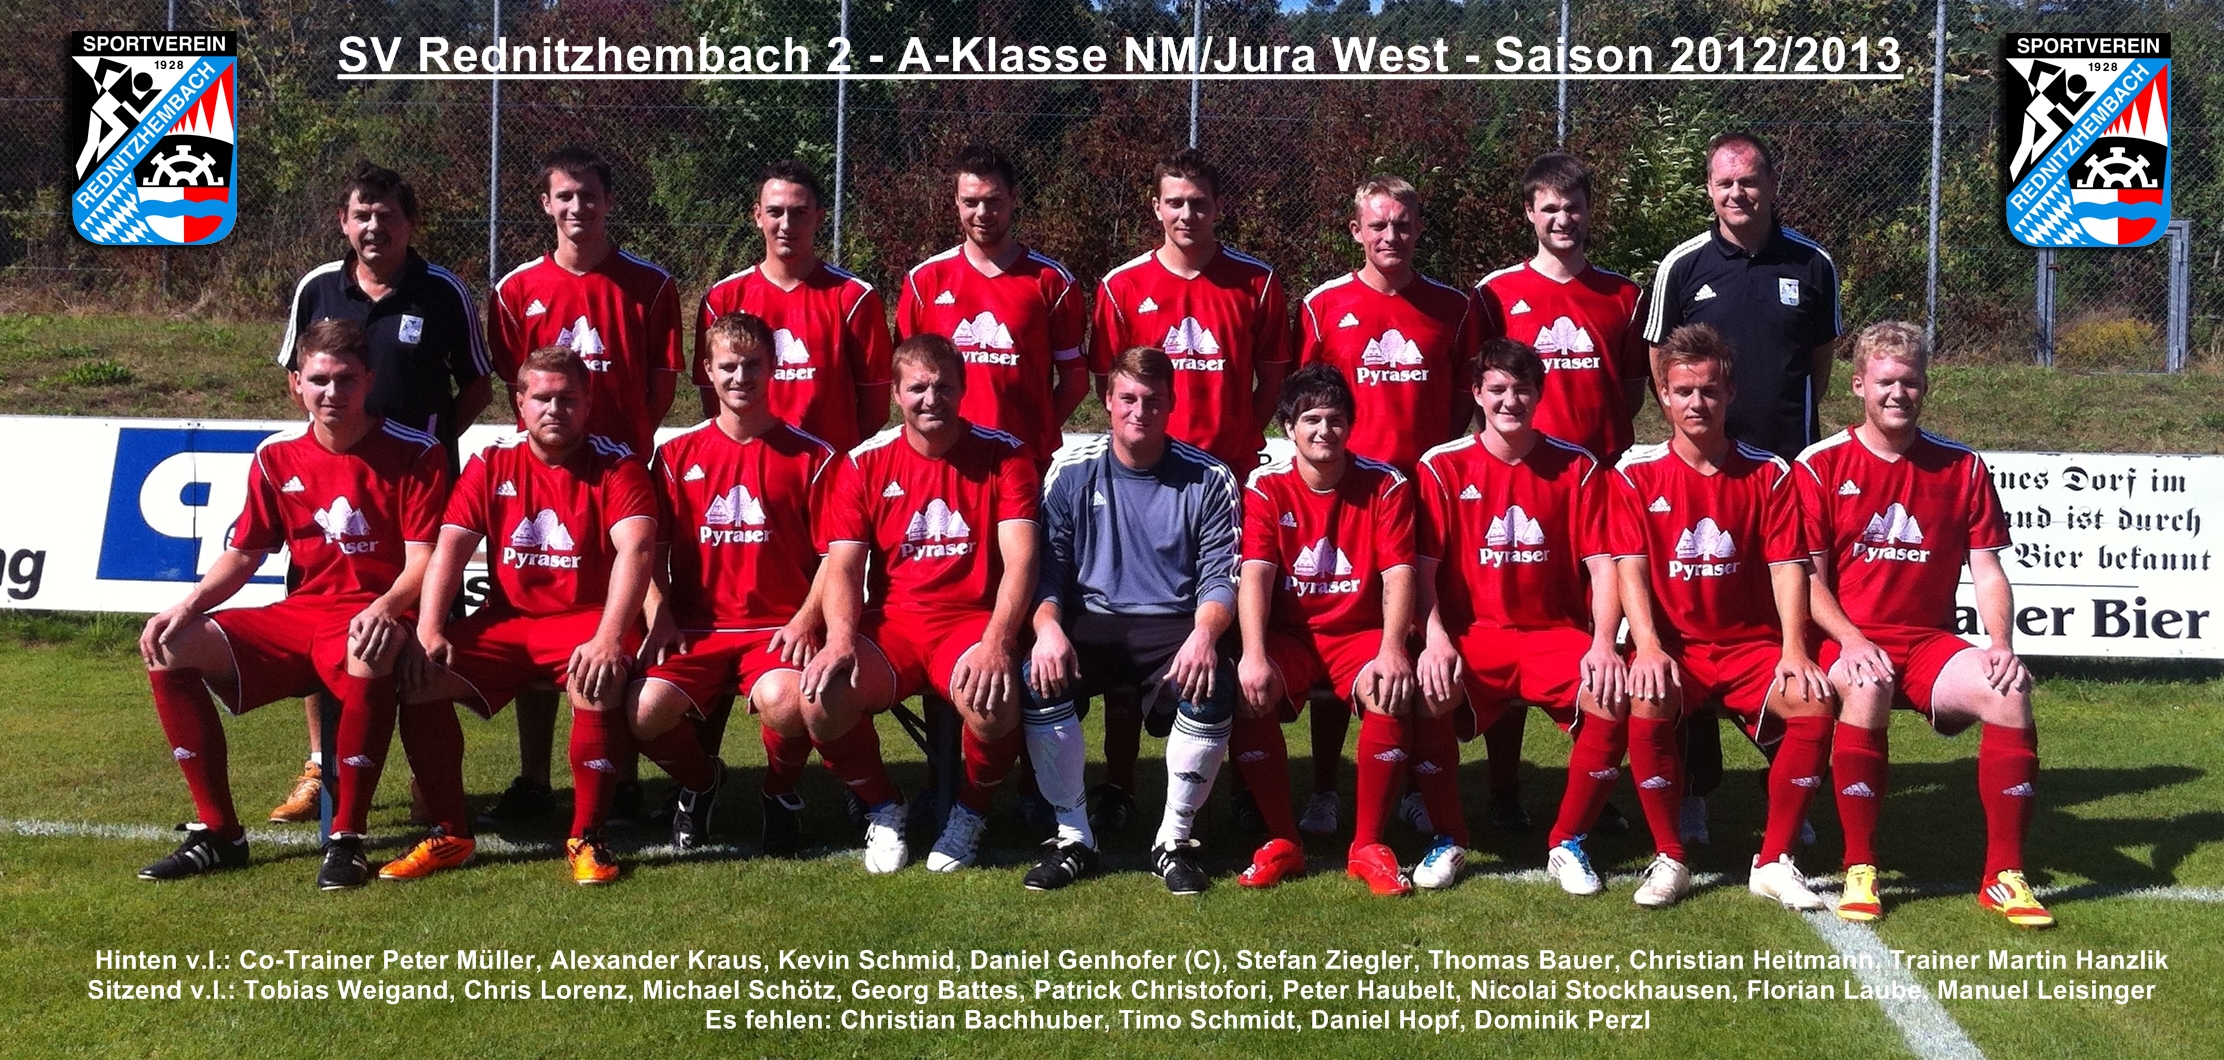 Mannschaftsfoto/Teamfoto von SV Rednitzhembach 2